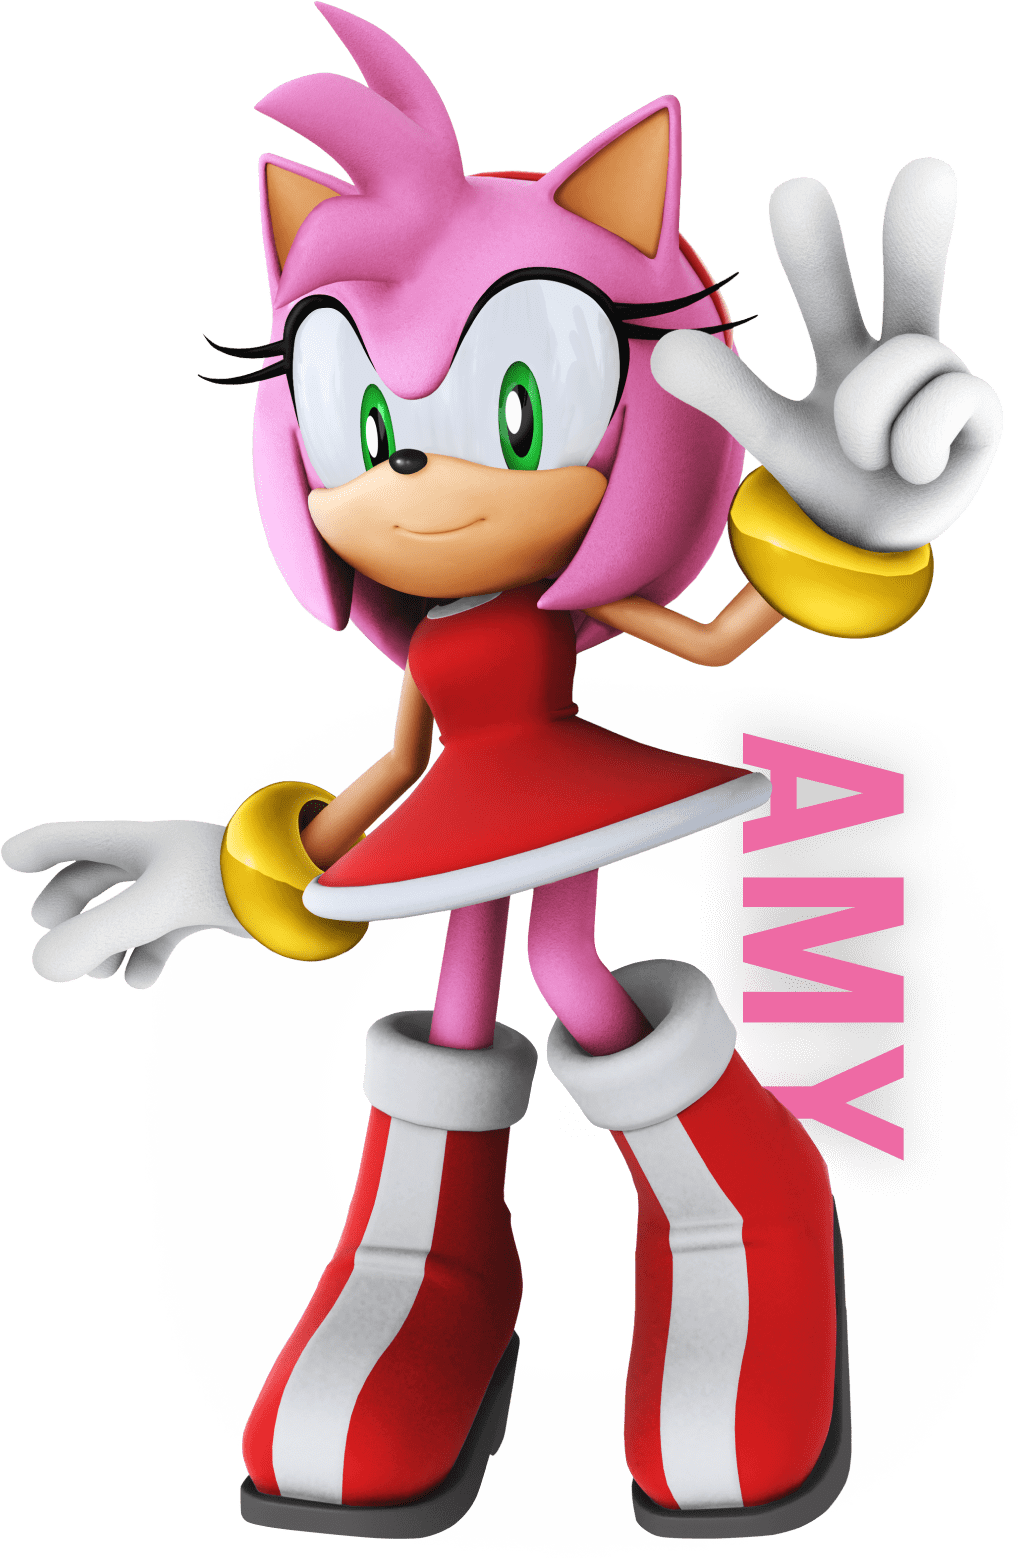 Sonic nos Jogos Olímpicos de Tóquio 2020 é lançado para mobile